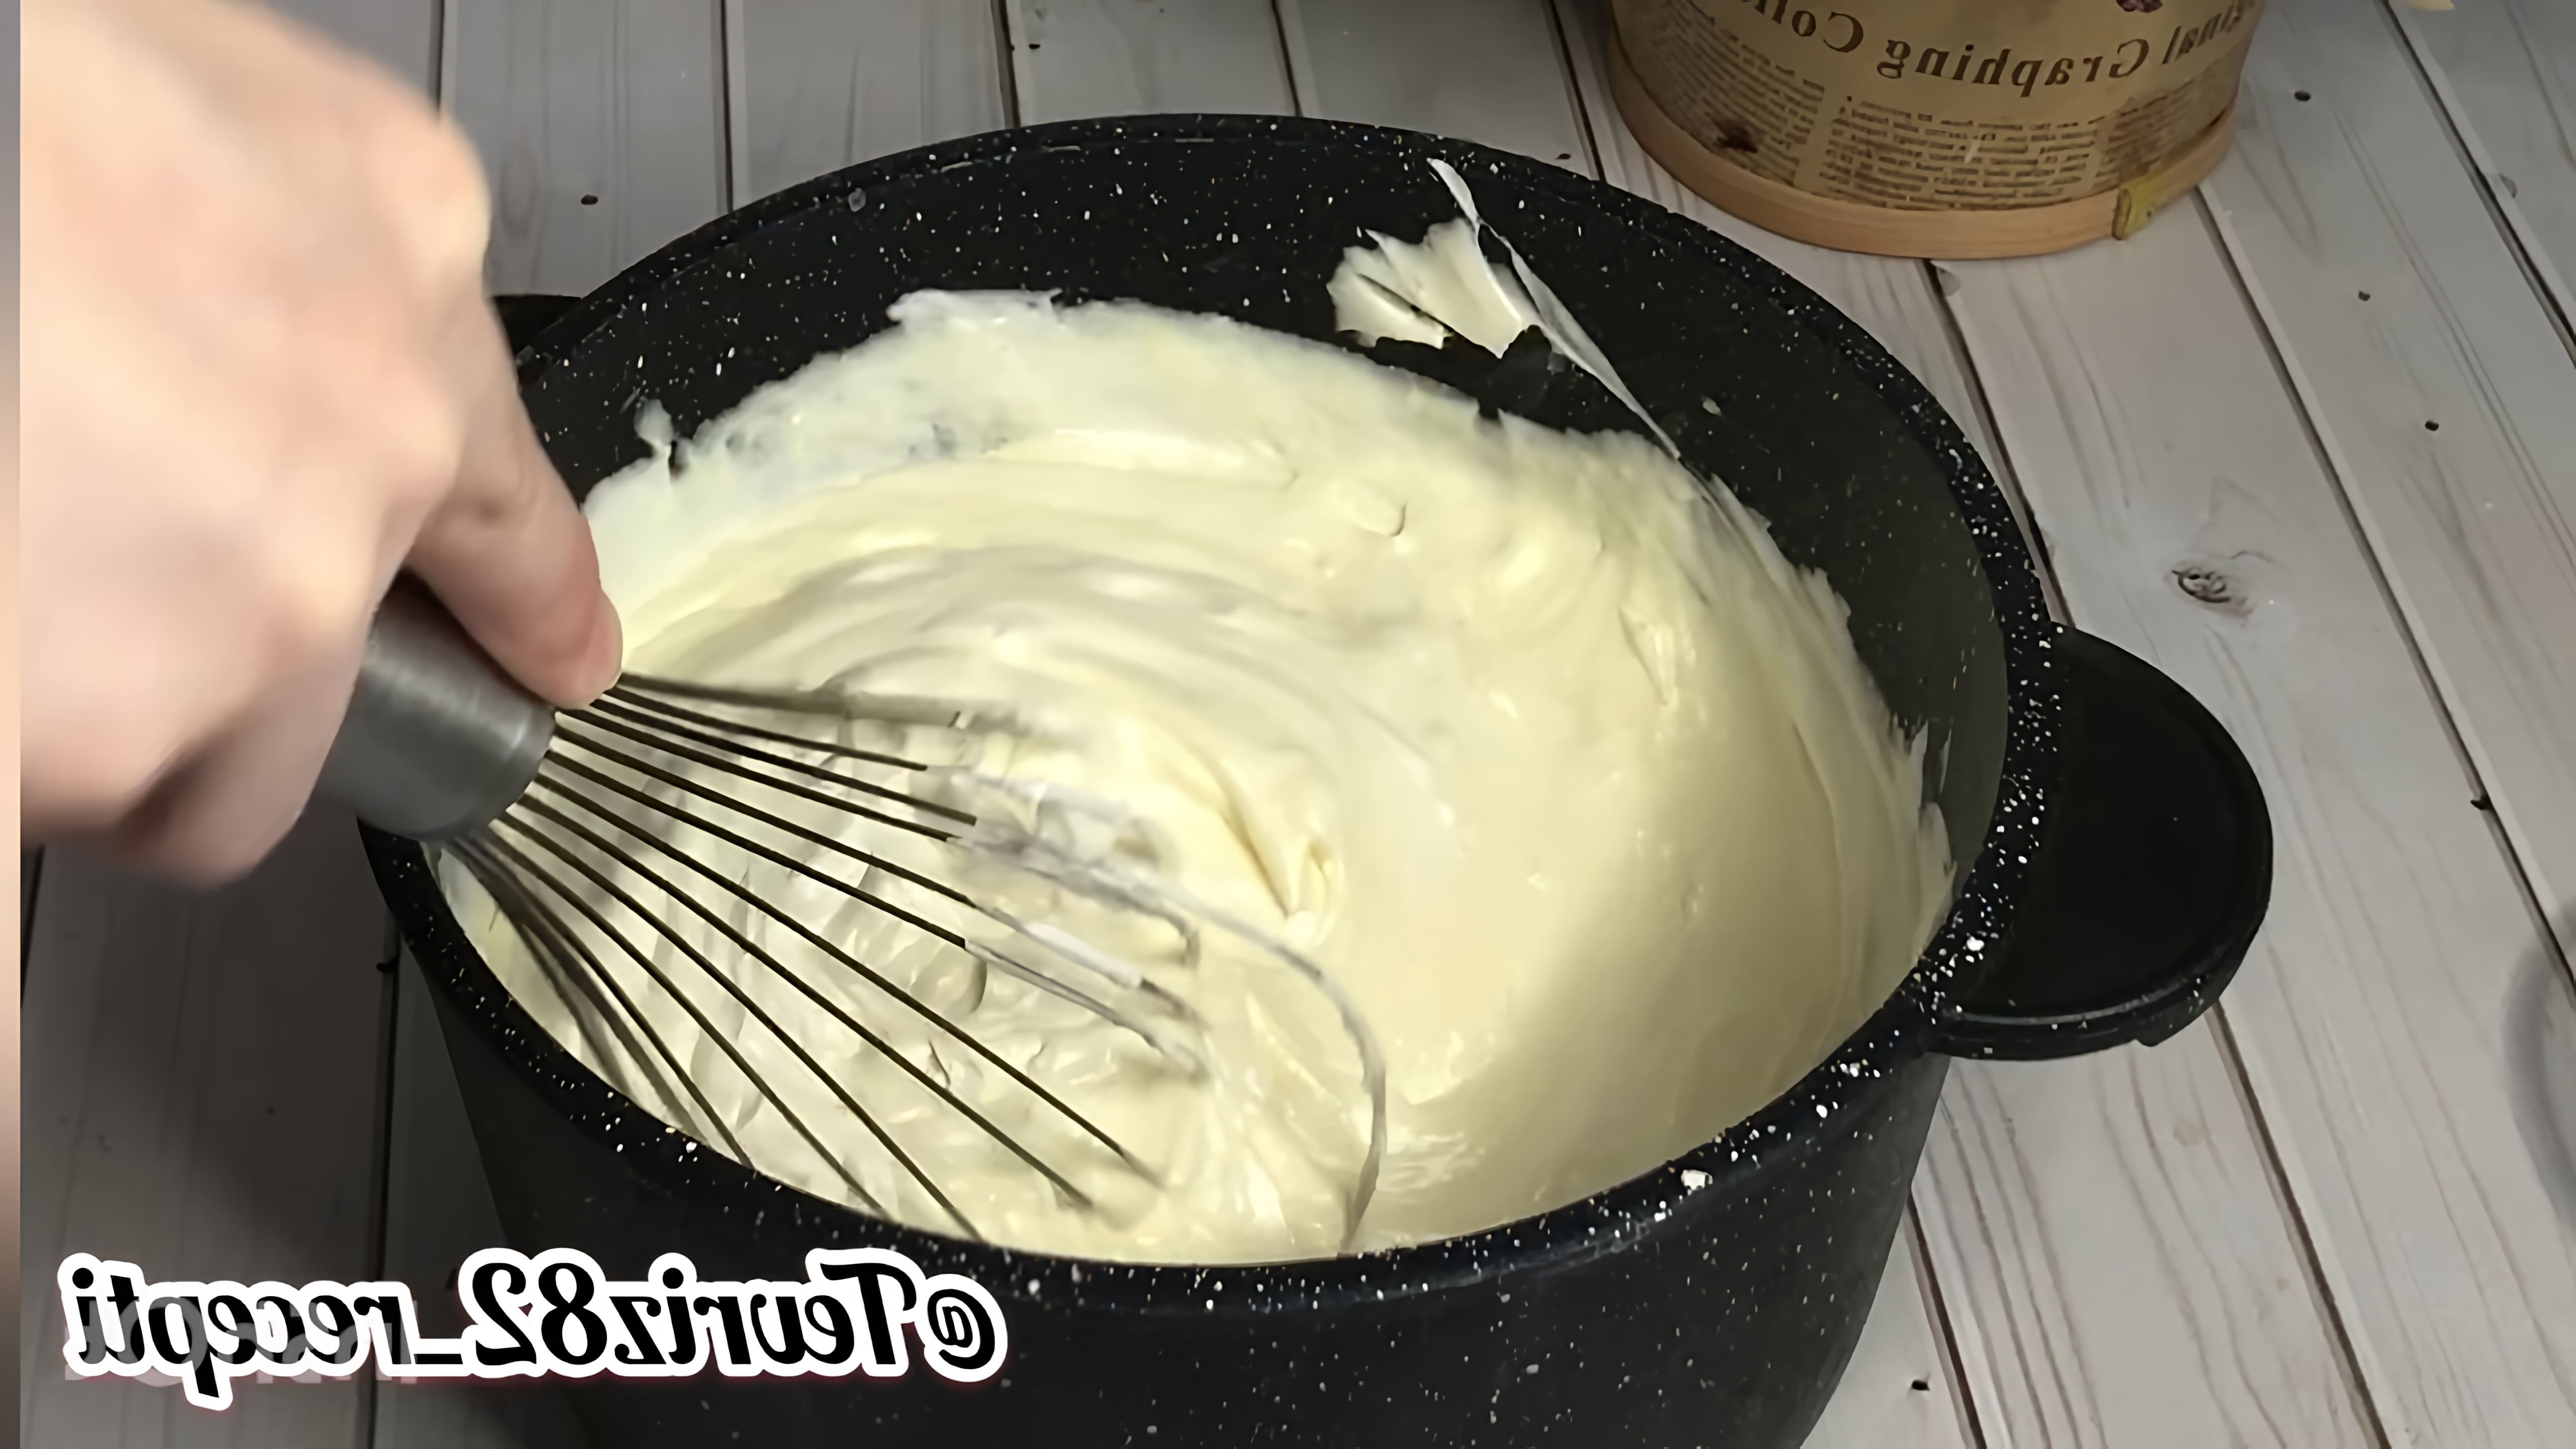 В этом видео демонстрируется процесс приготовления крема "Пломбир" для тортов